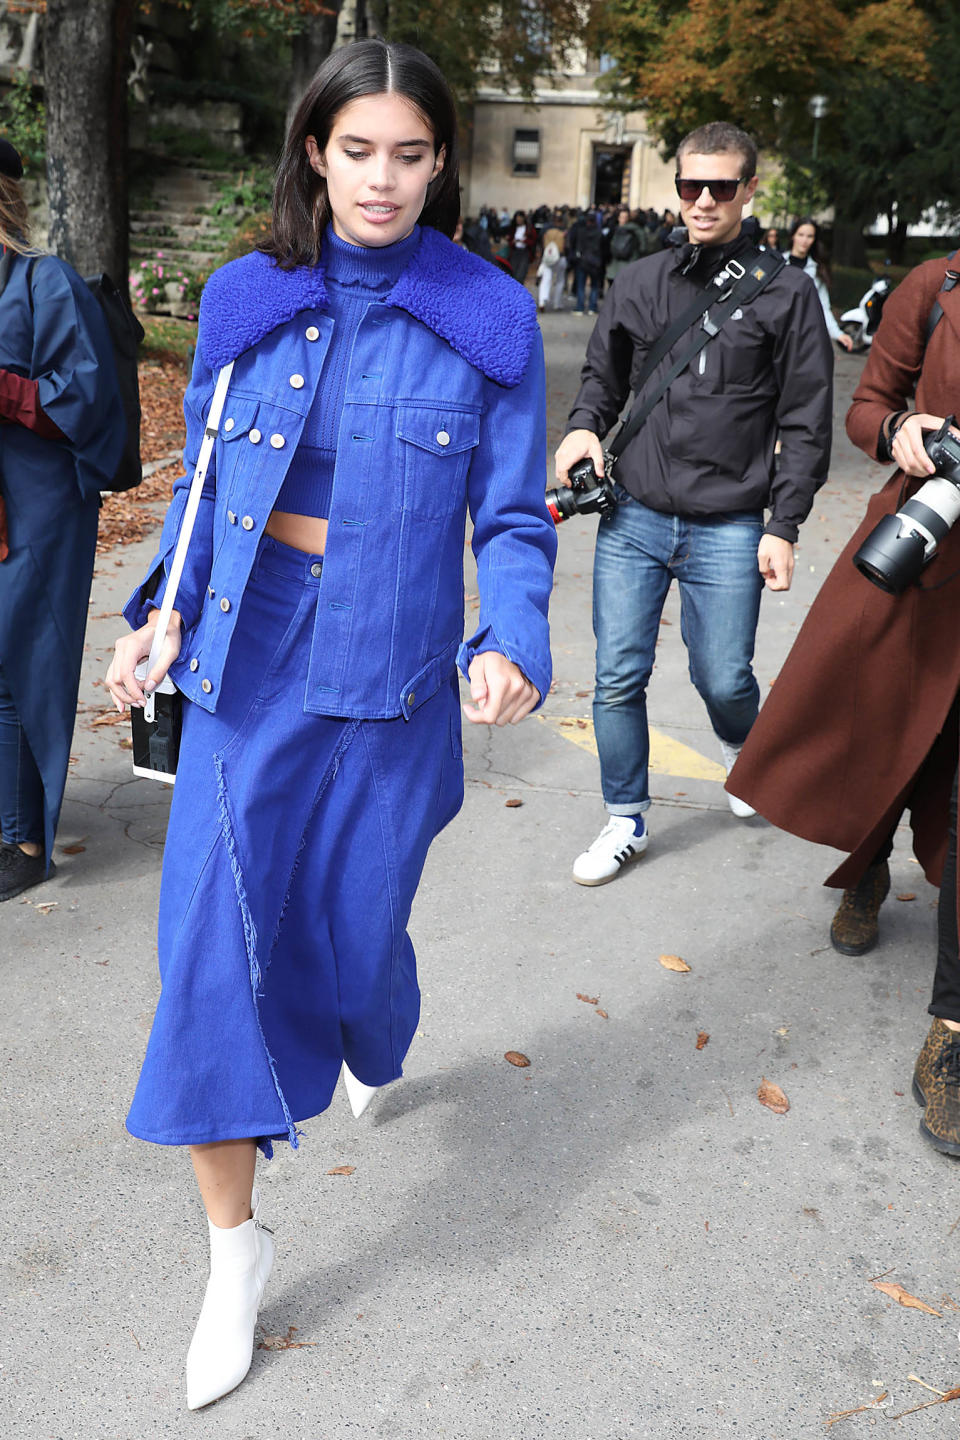 <p>Model Sara Sampaio beim Verlassen der Show von Designer Thierry Mugler. Sie entschied sich für einen stylishen One-Color-Look in Marineblau. Dazu kombinierte sie Stilettos in der Trendfarbe Weiß. (Bild: Splash News) </p>